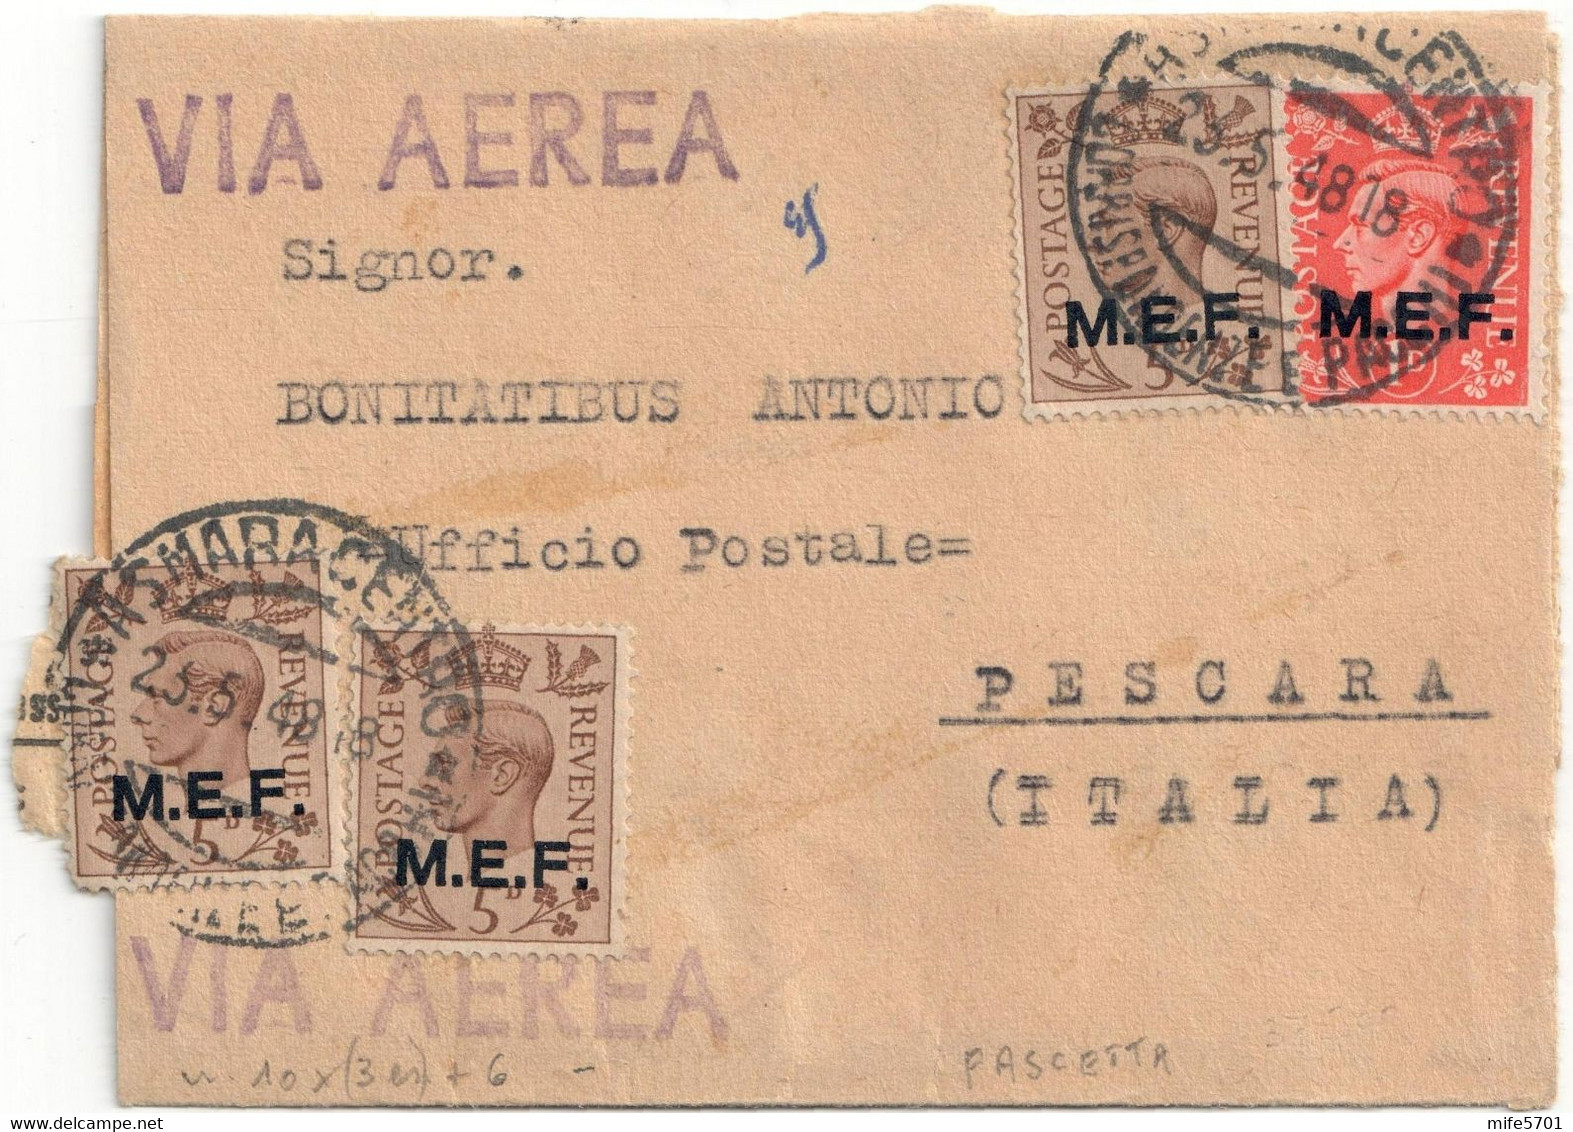 REGNO D'ITALIA OCCUPAZIONI M.E.F. FASCETTA DA ASMARA A PESCARA 23.5.1948 4 FRANCOBOLLI DA P. 1 + 3 ES. P. 5 SASSONE 6/10 - Britse Bezetting MEF